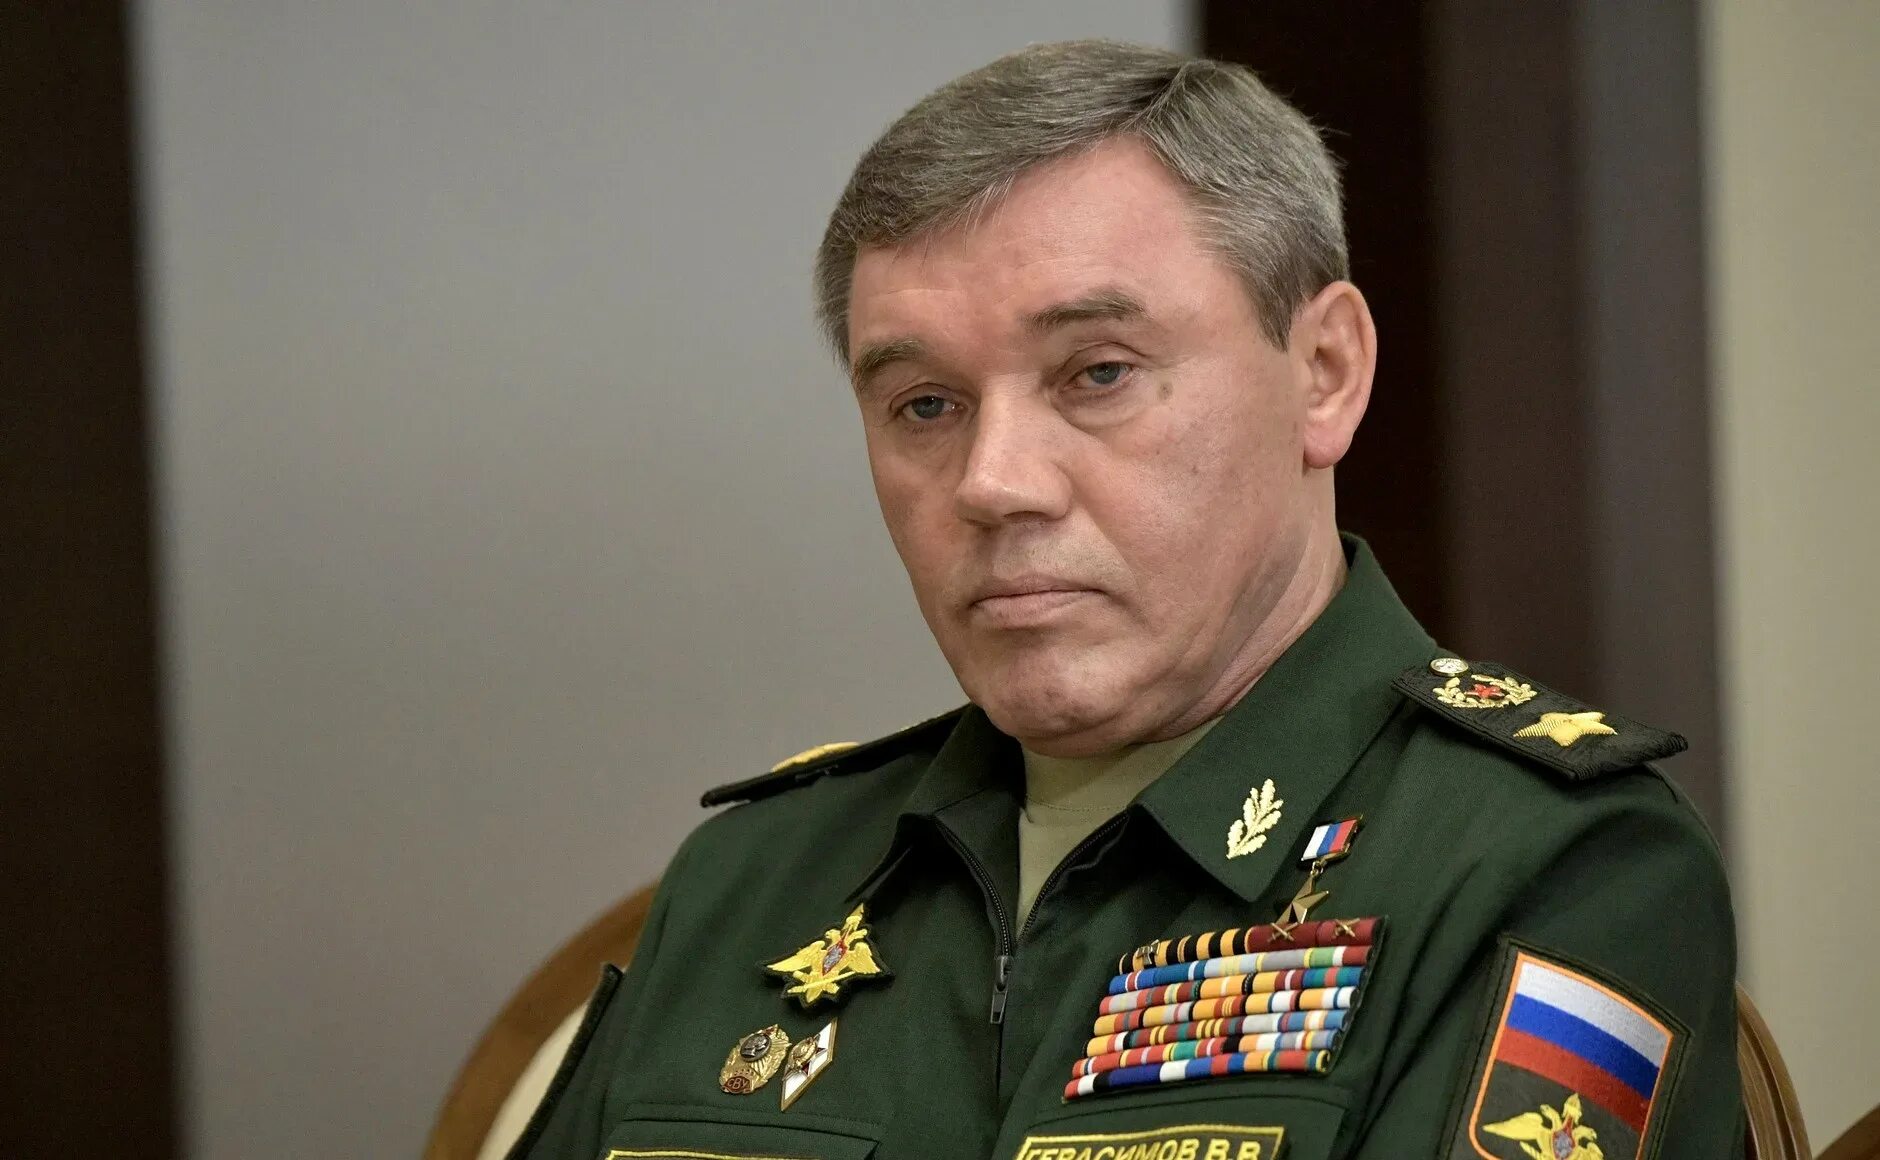 Начальник генерального штаба Вооруженных сил Российской Федерации. Штаб военного генерала